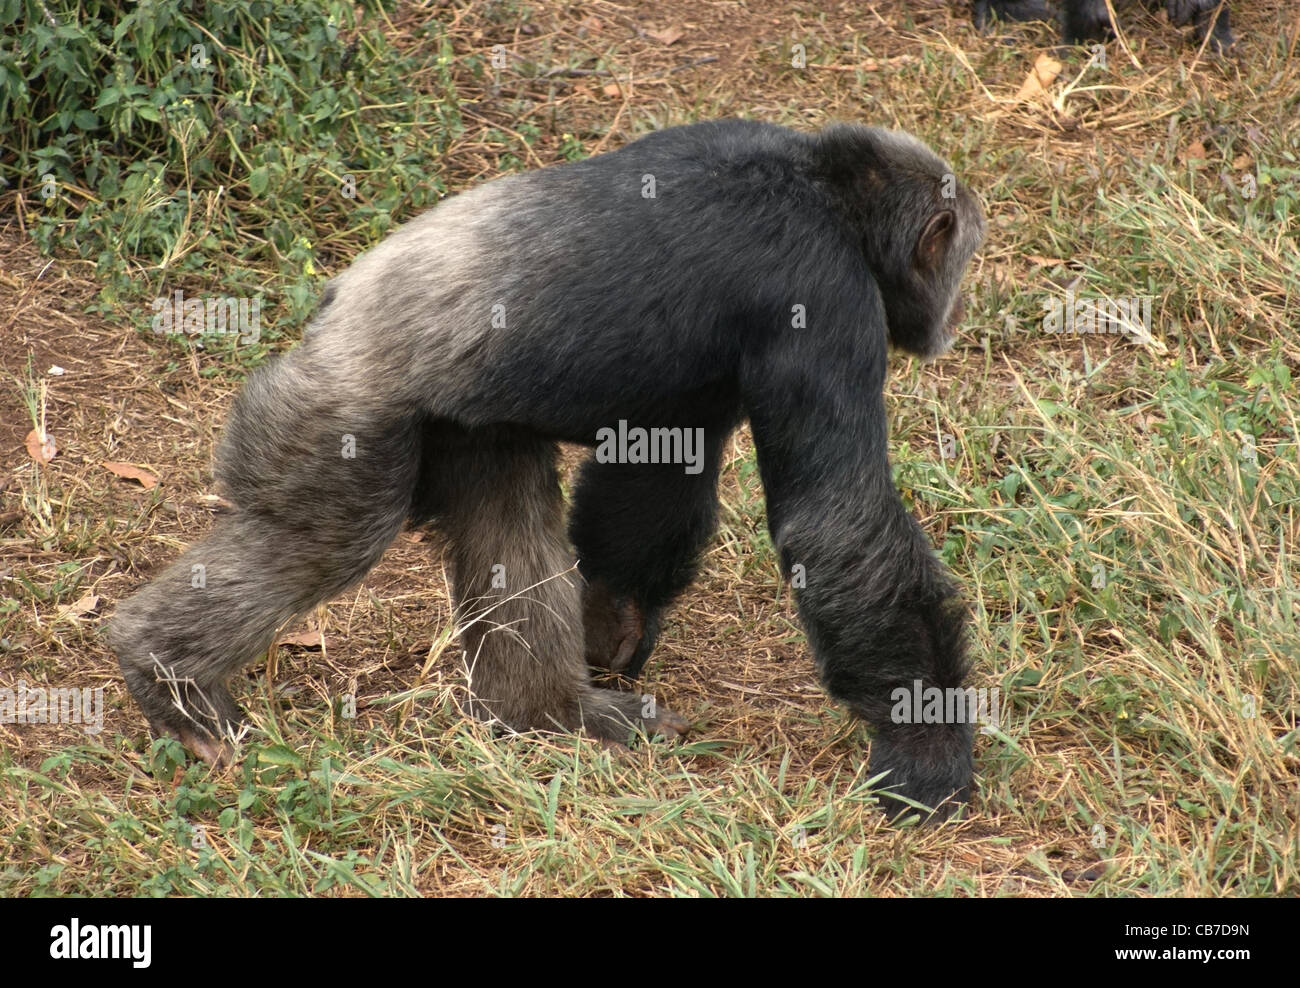 Tourné en extérieur de l'Ouganda (Afrique) montrant un chimpanzé marche dans l'ambiance d'herbe Banque D'Images